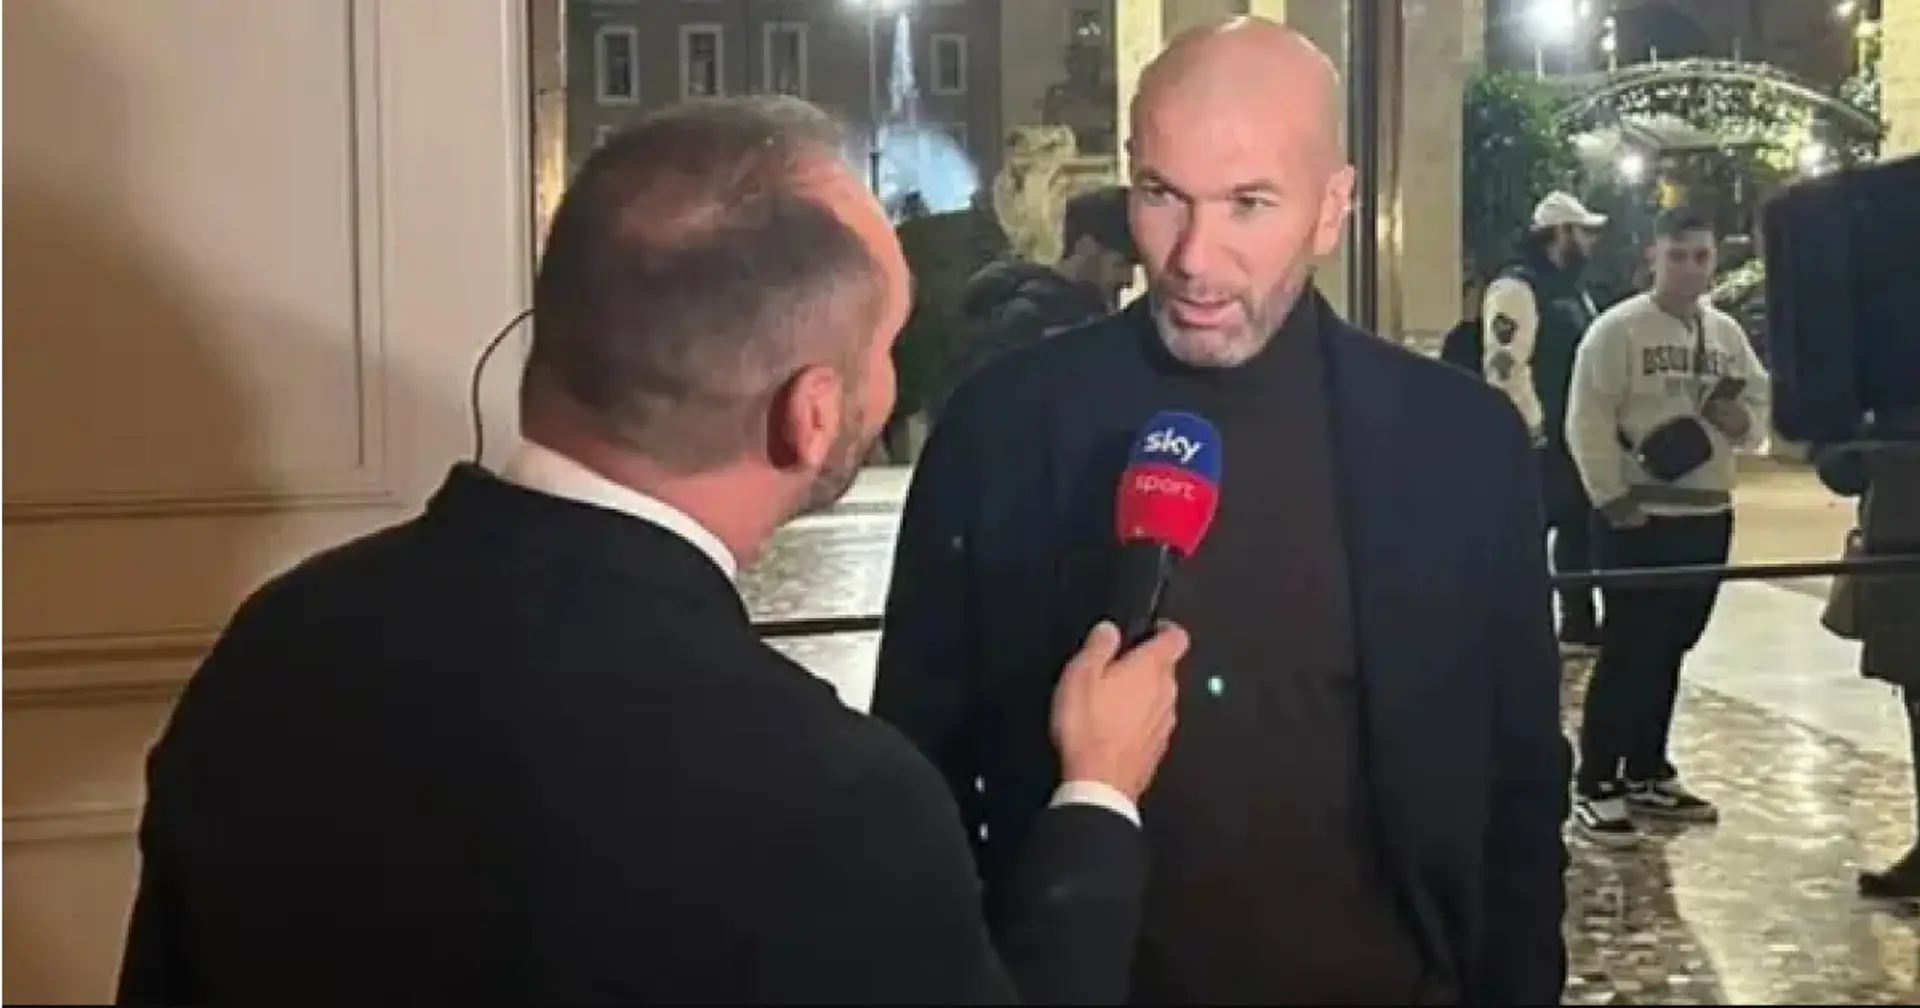 Zidane nennt ZWEI Trainer, die seine Karriere verändert haben 